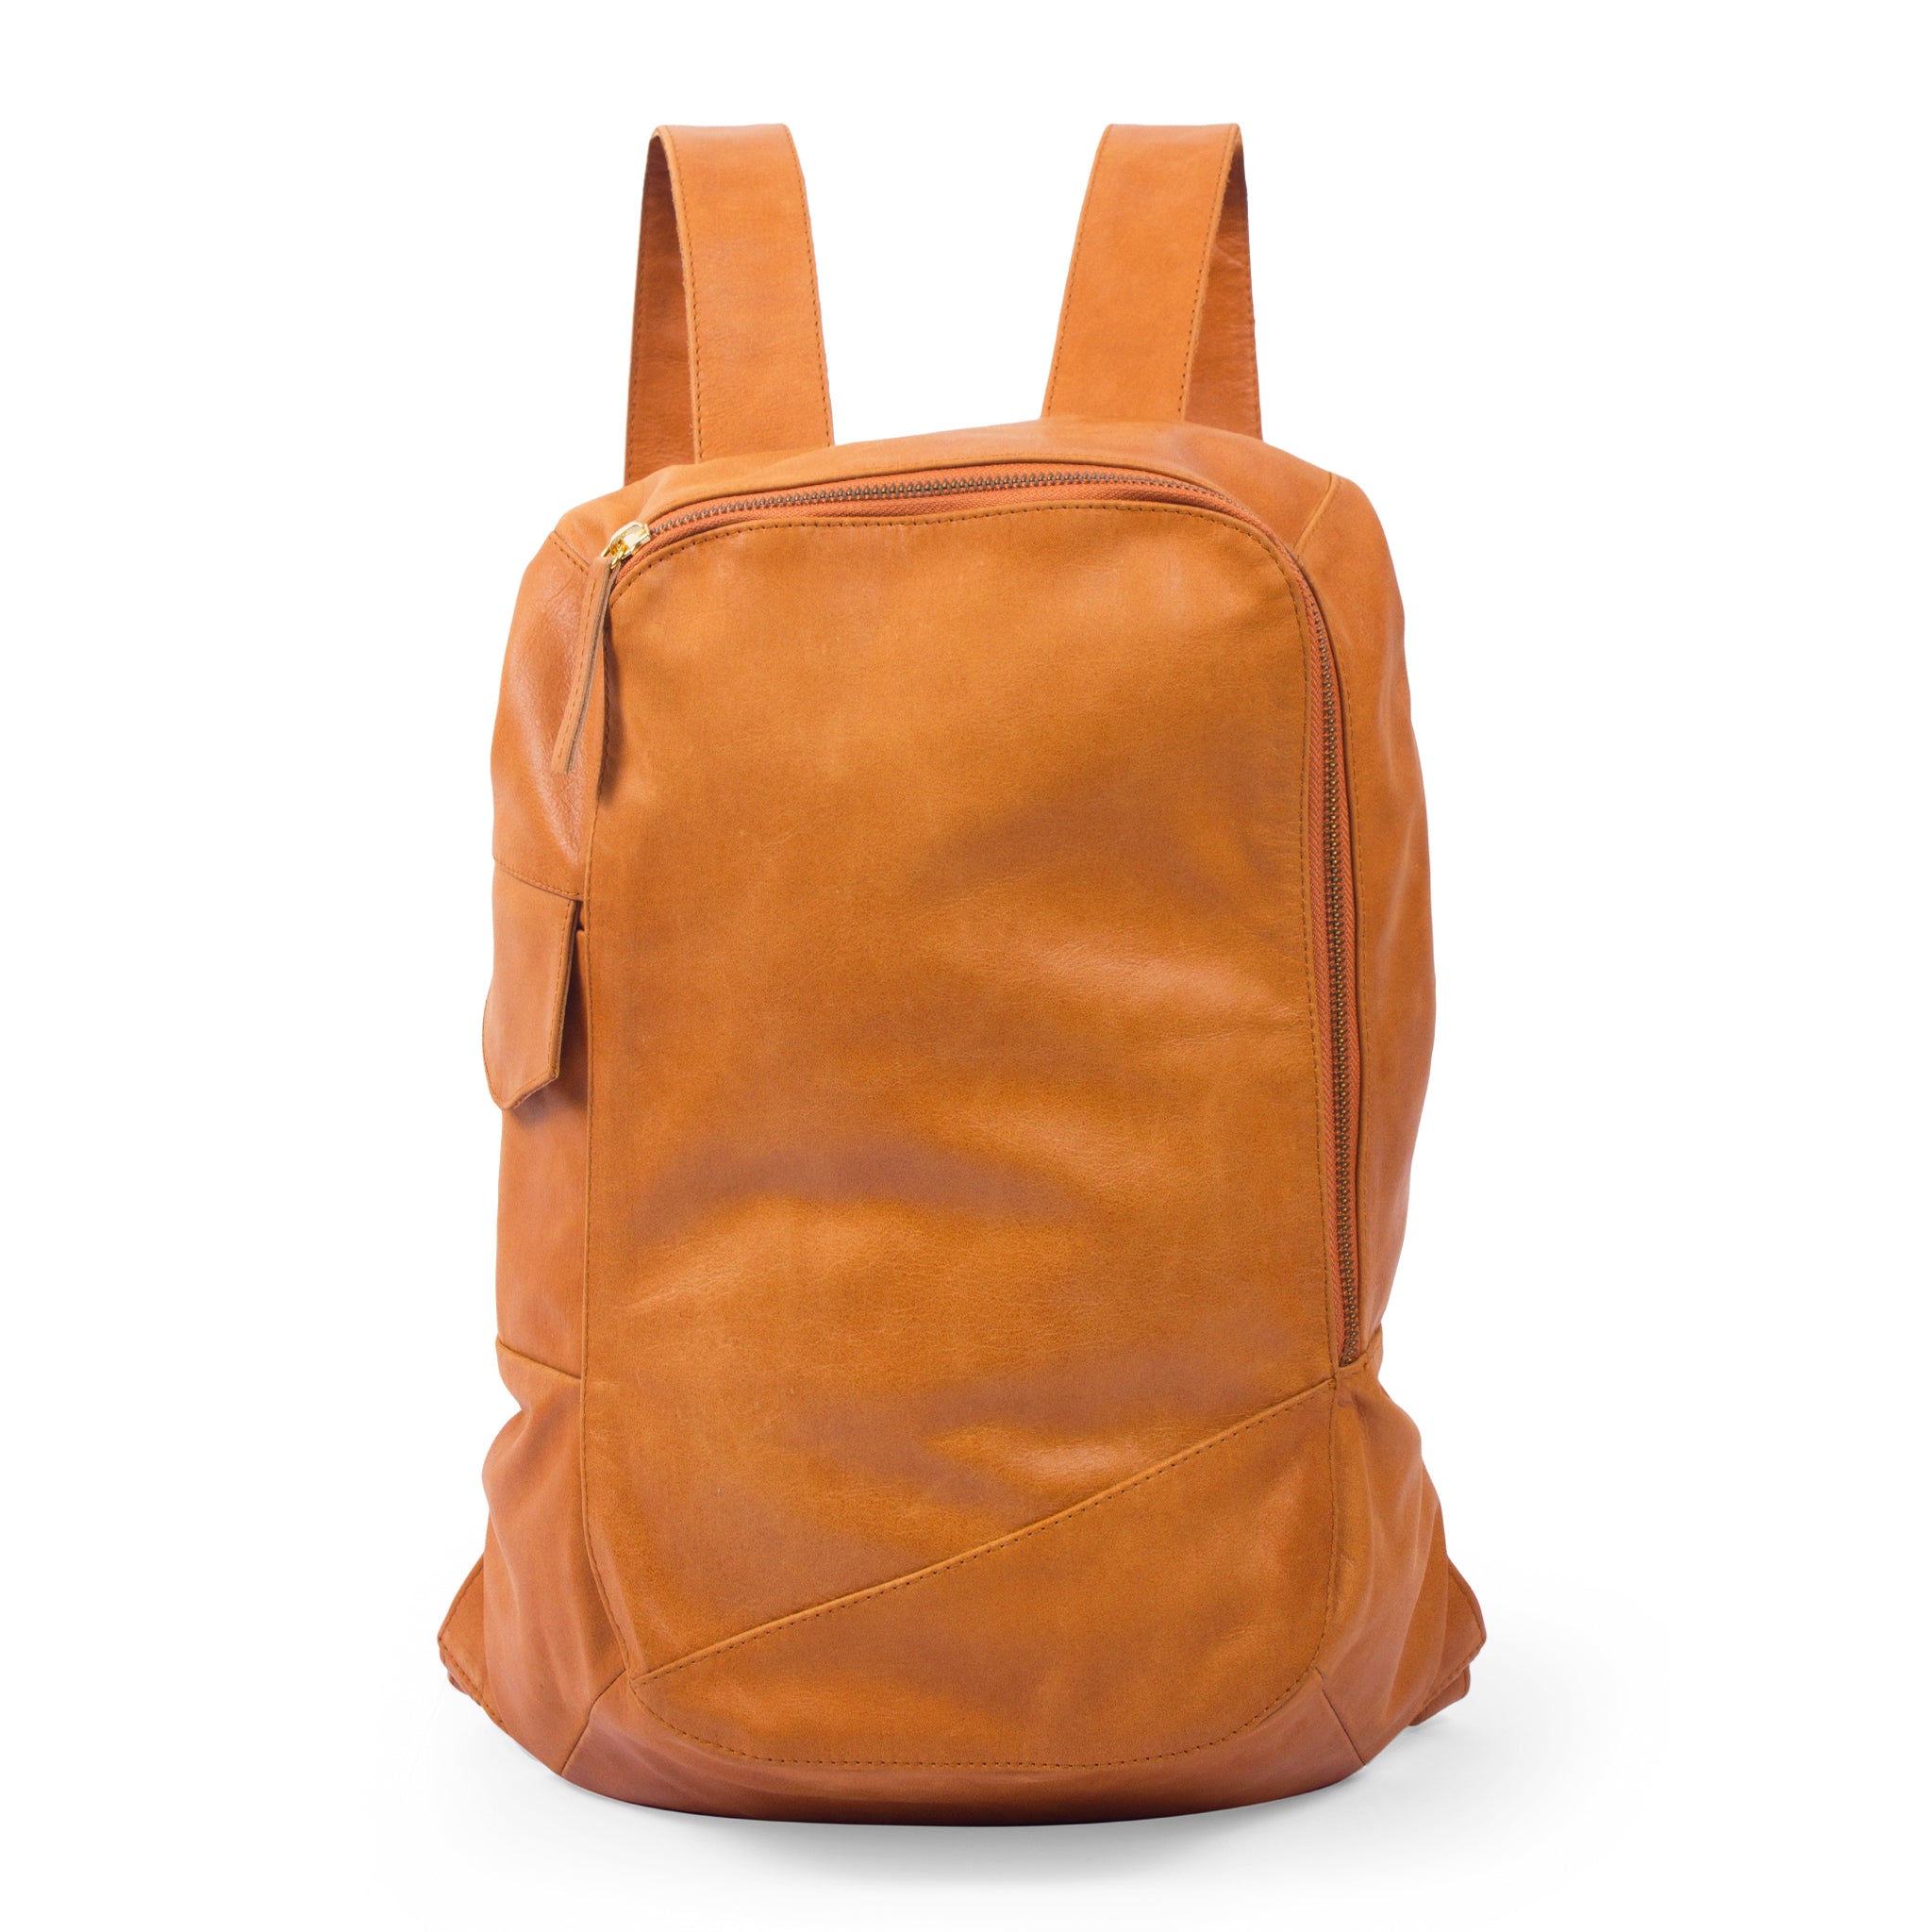 Brooklyn Leather Backpack-Tan